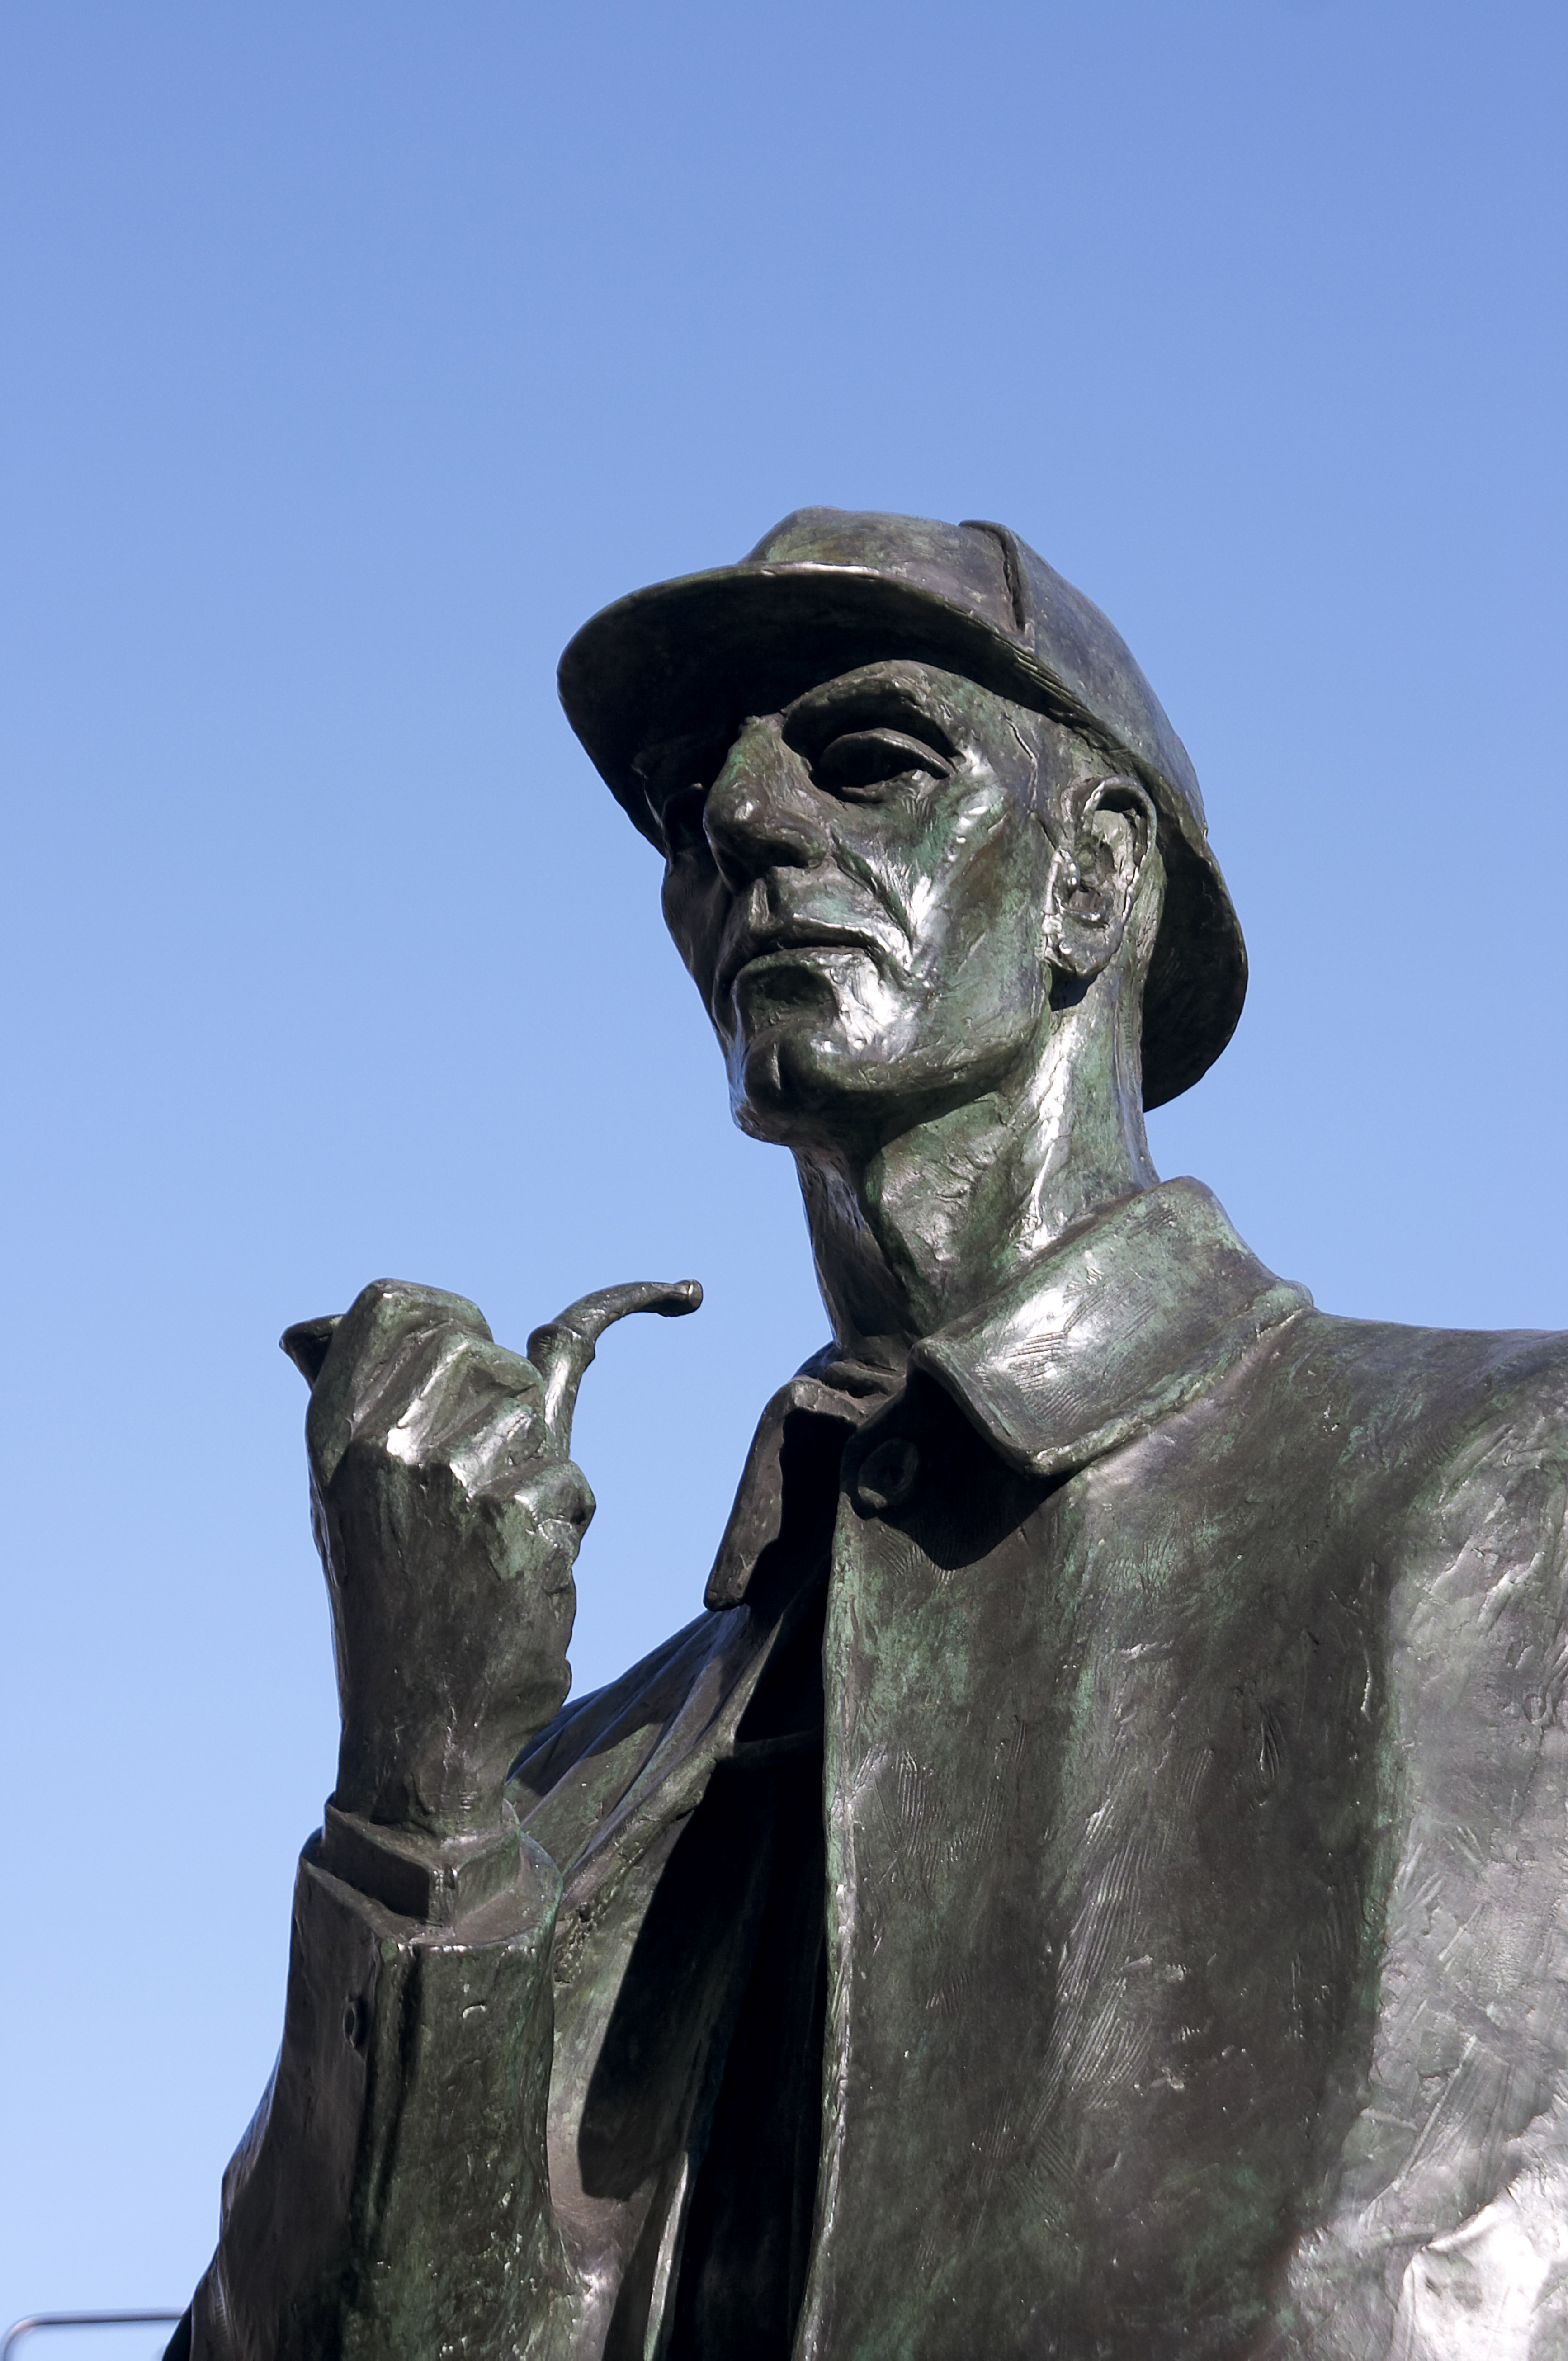 The Sherlock Holmes statue on Baker Street in London.